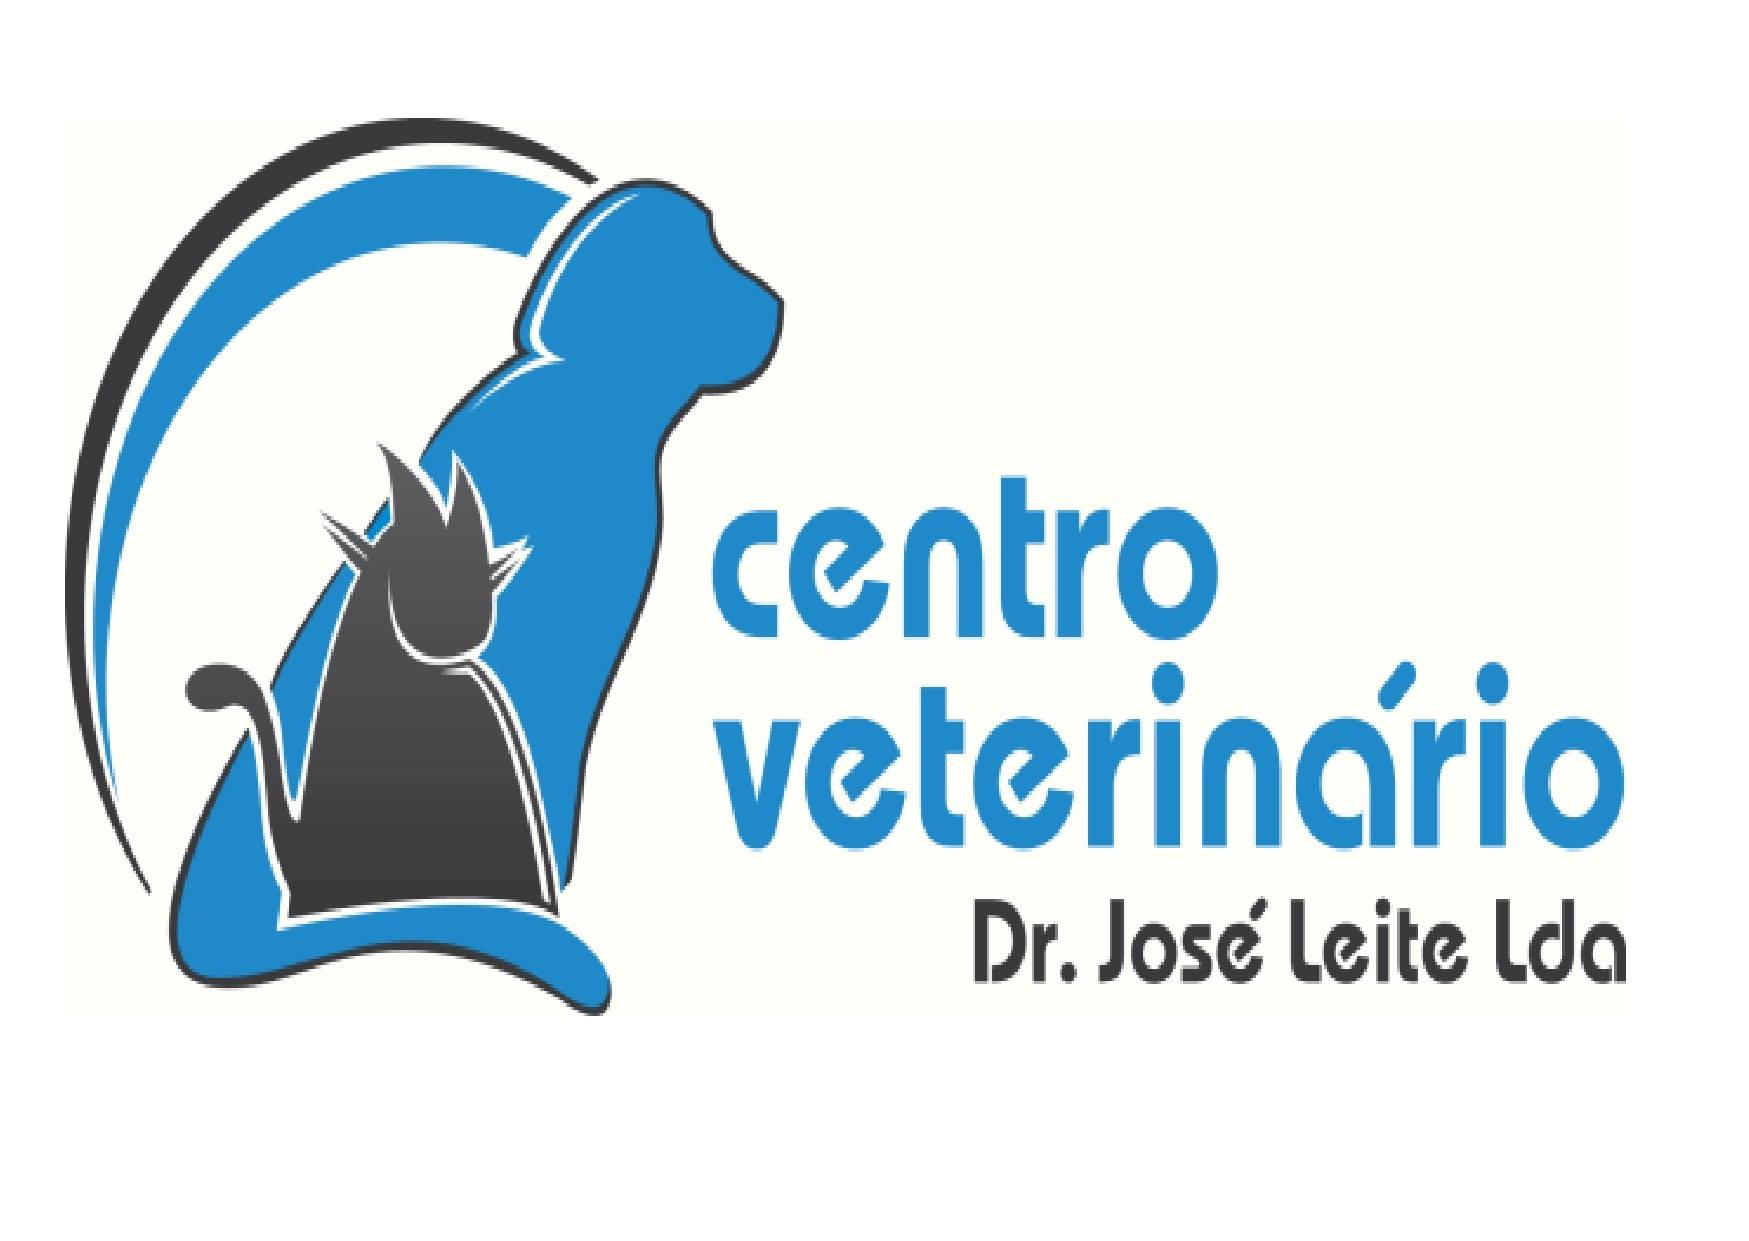 Centro Vet. Dr. José Leite